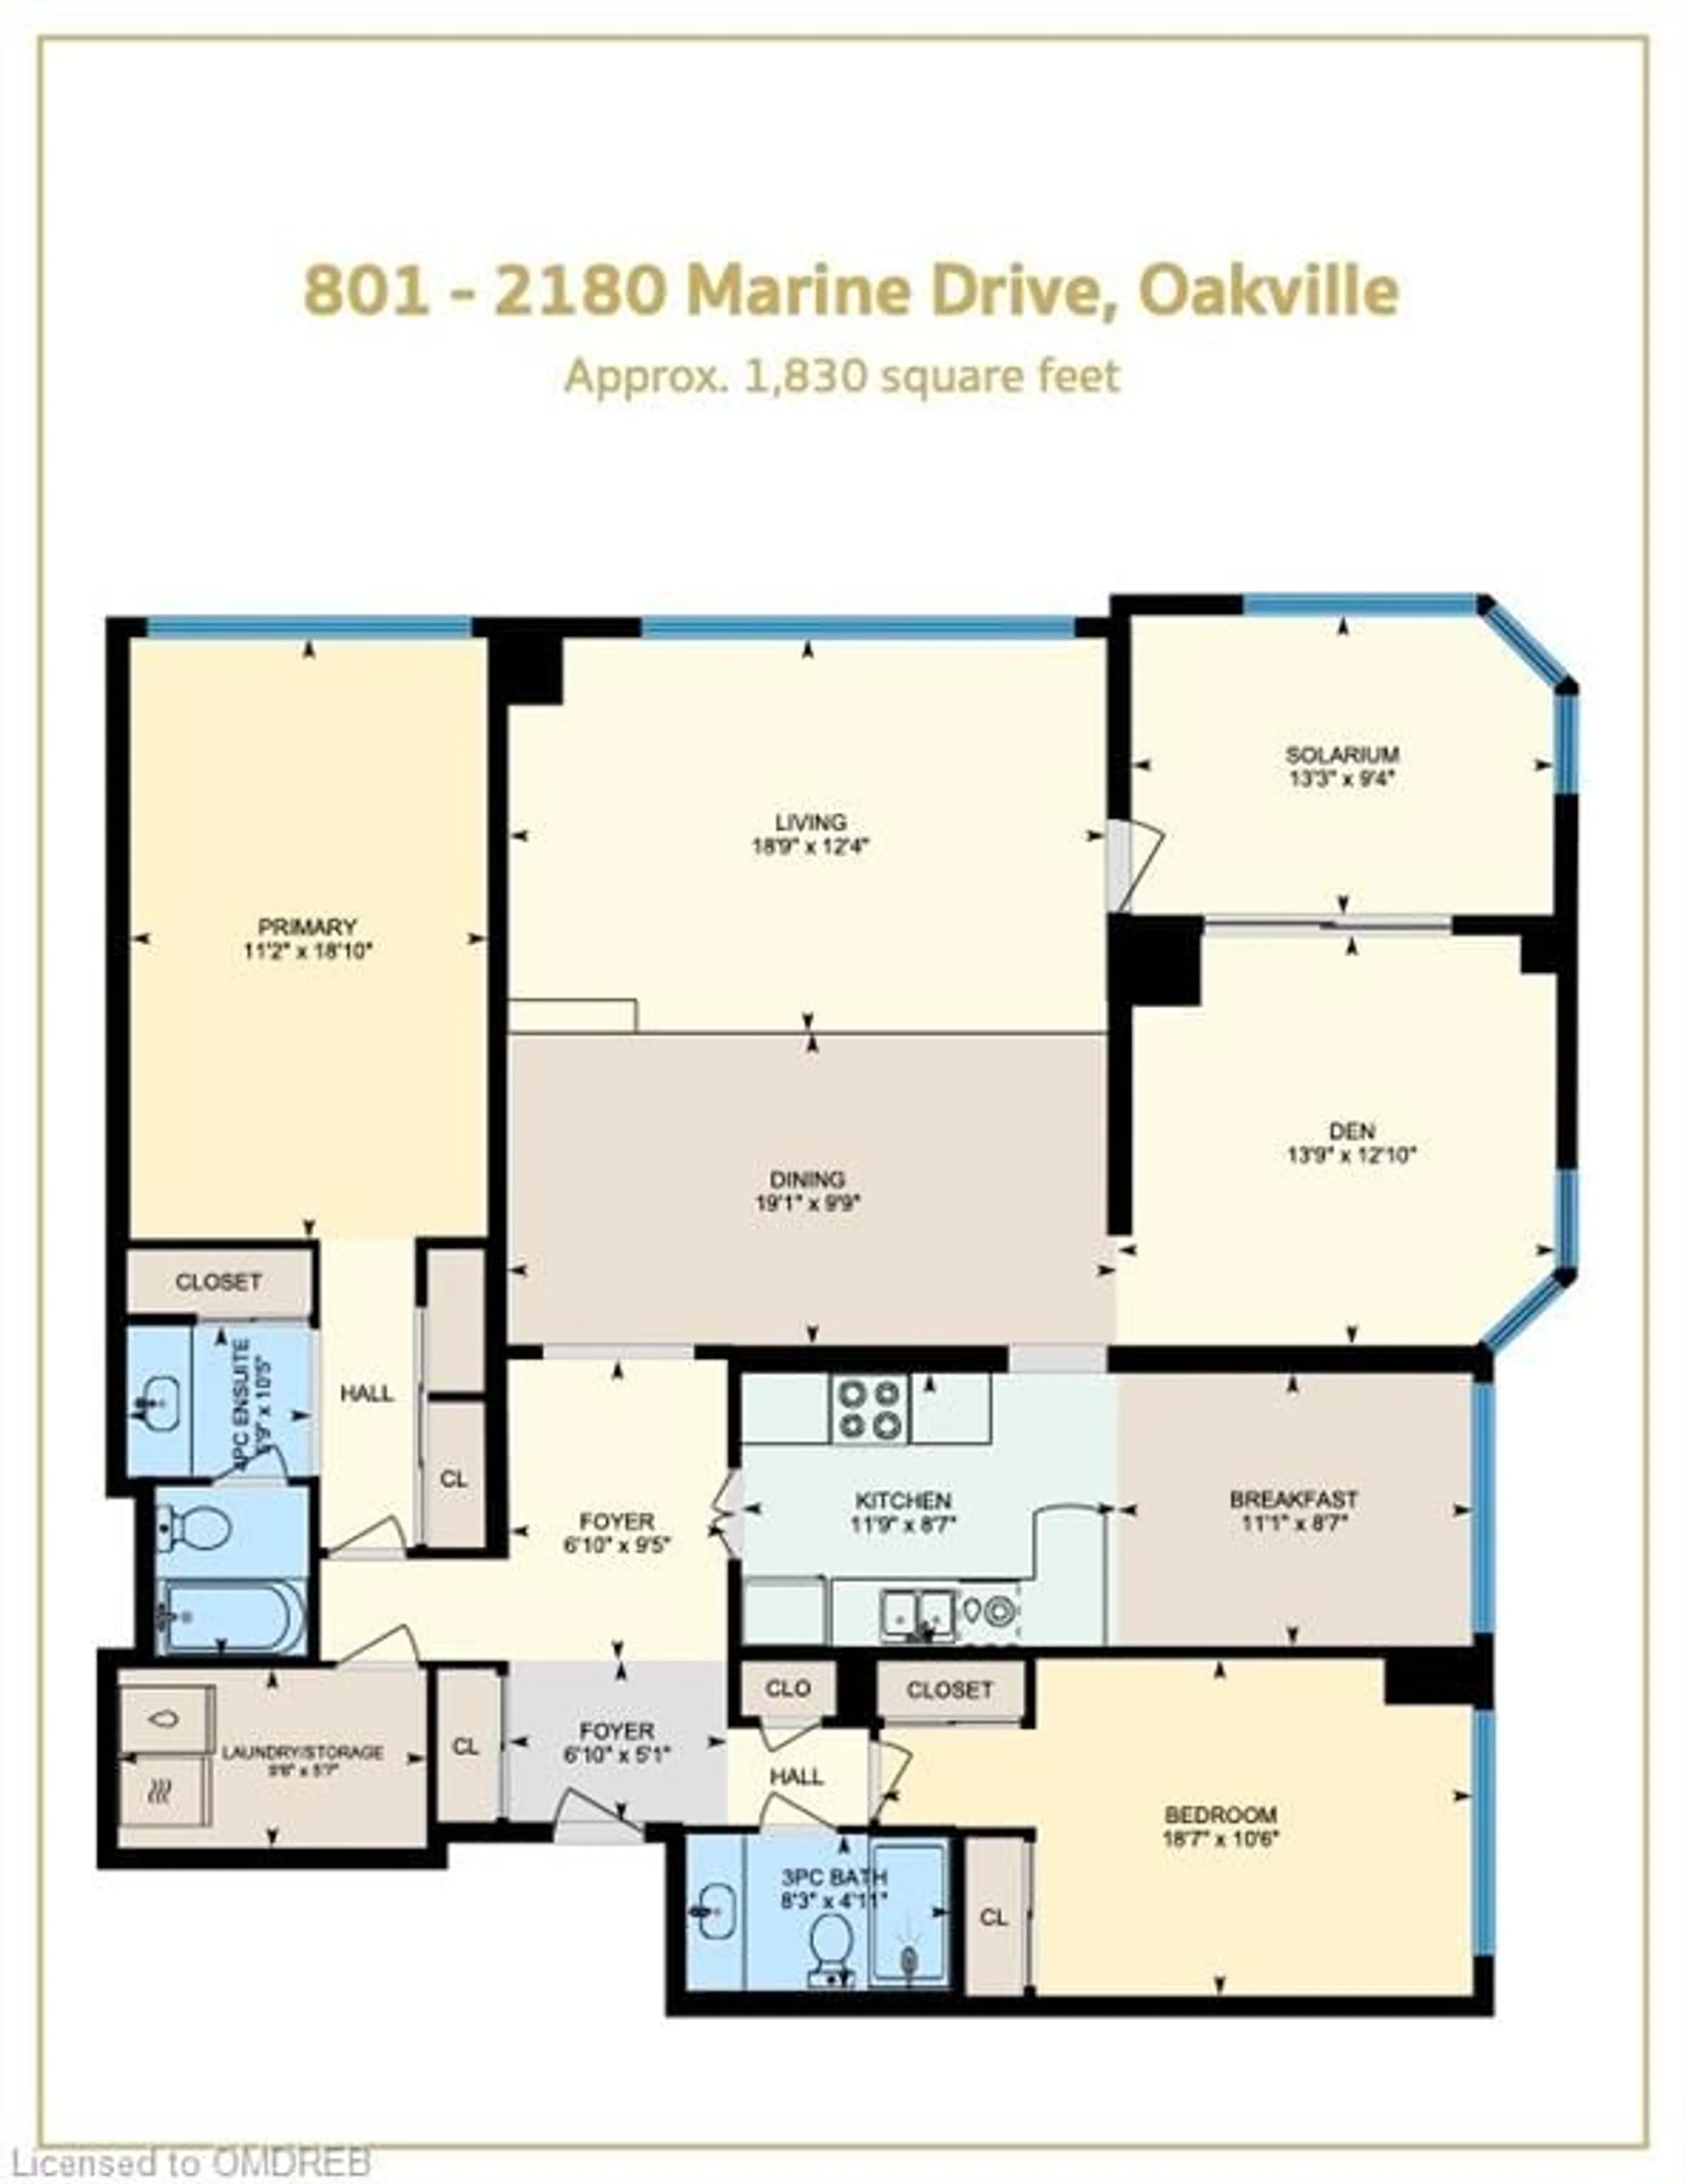 Floor plan for 2180 Marine Dr #801, Oakville Ontario L6L 5V2